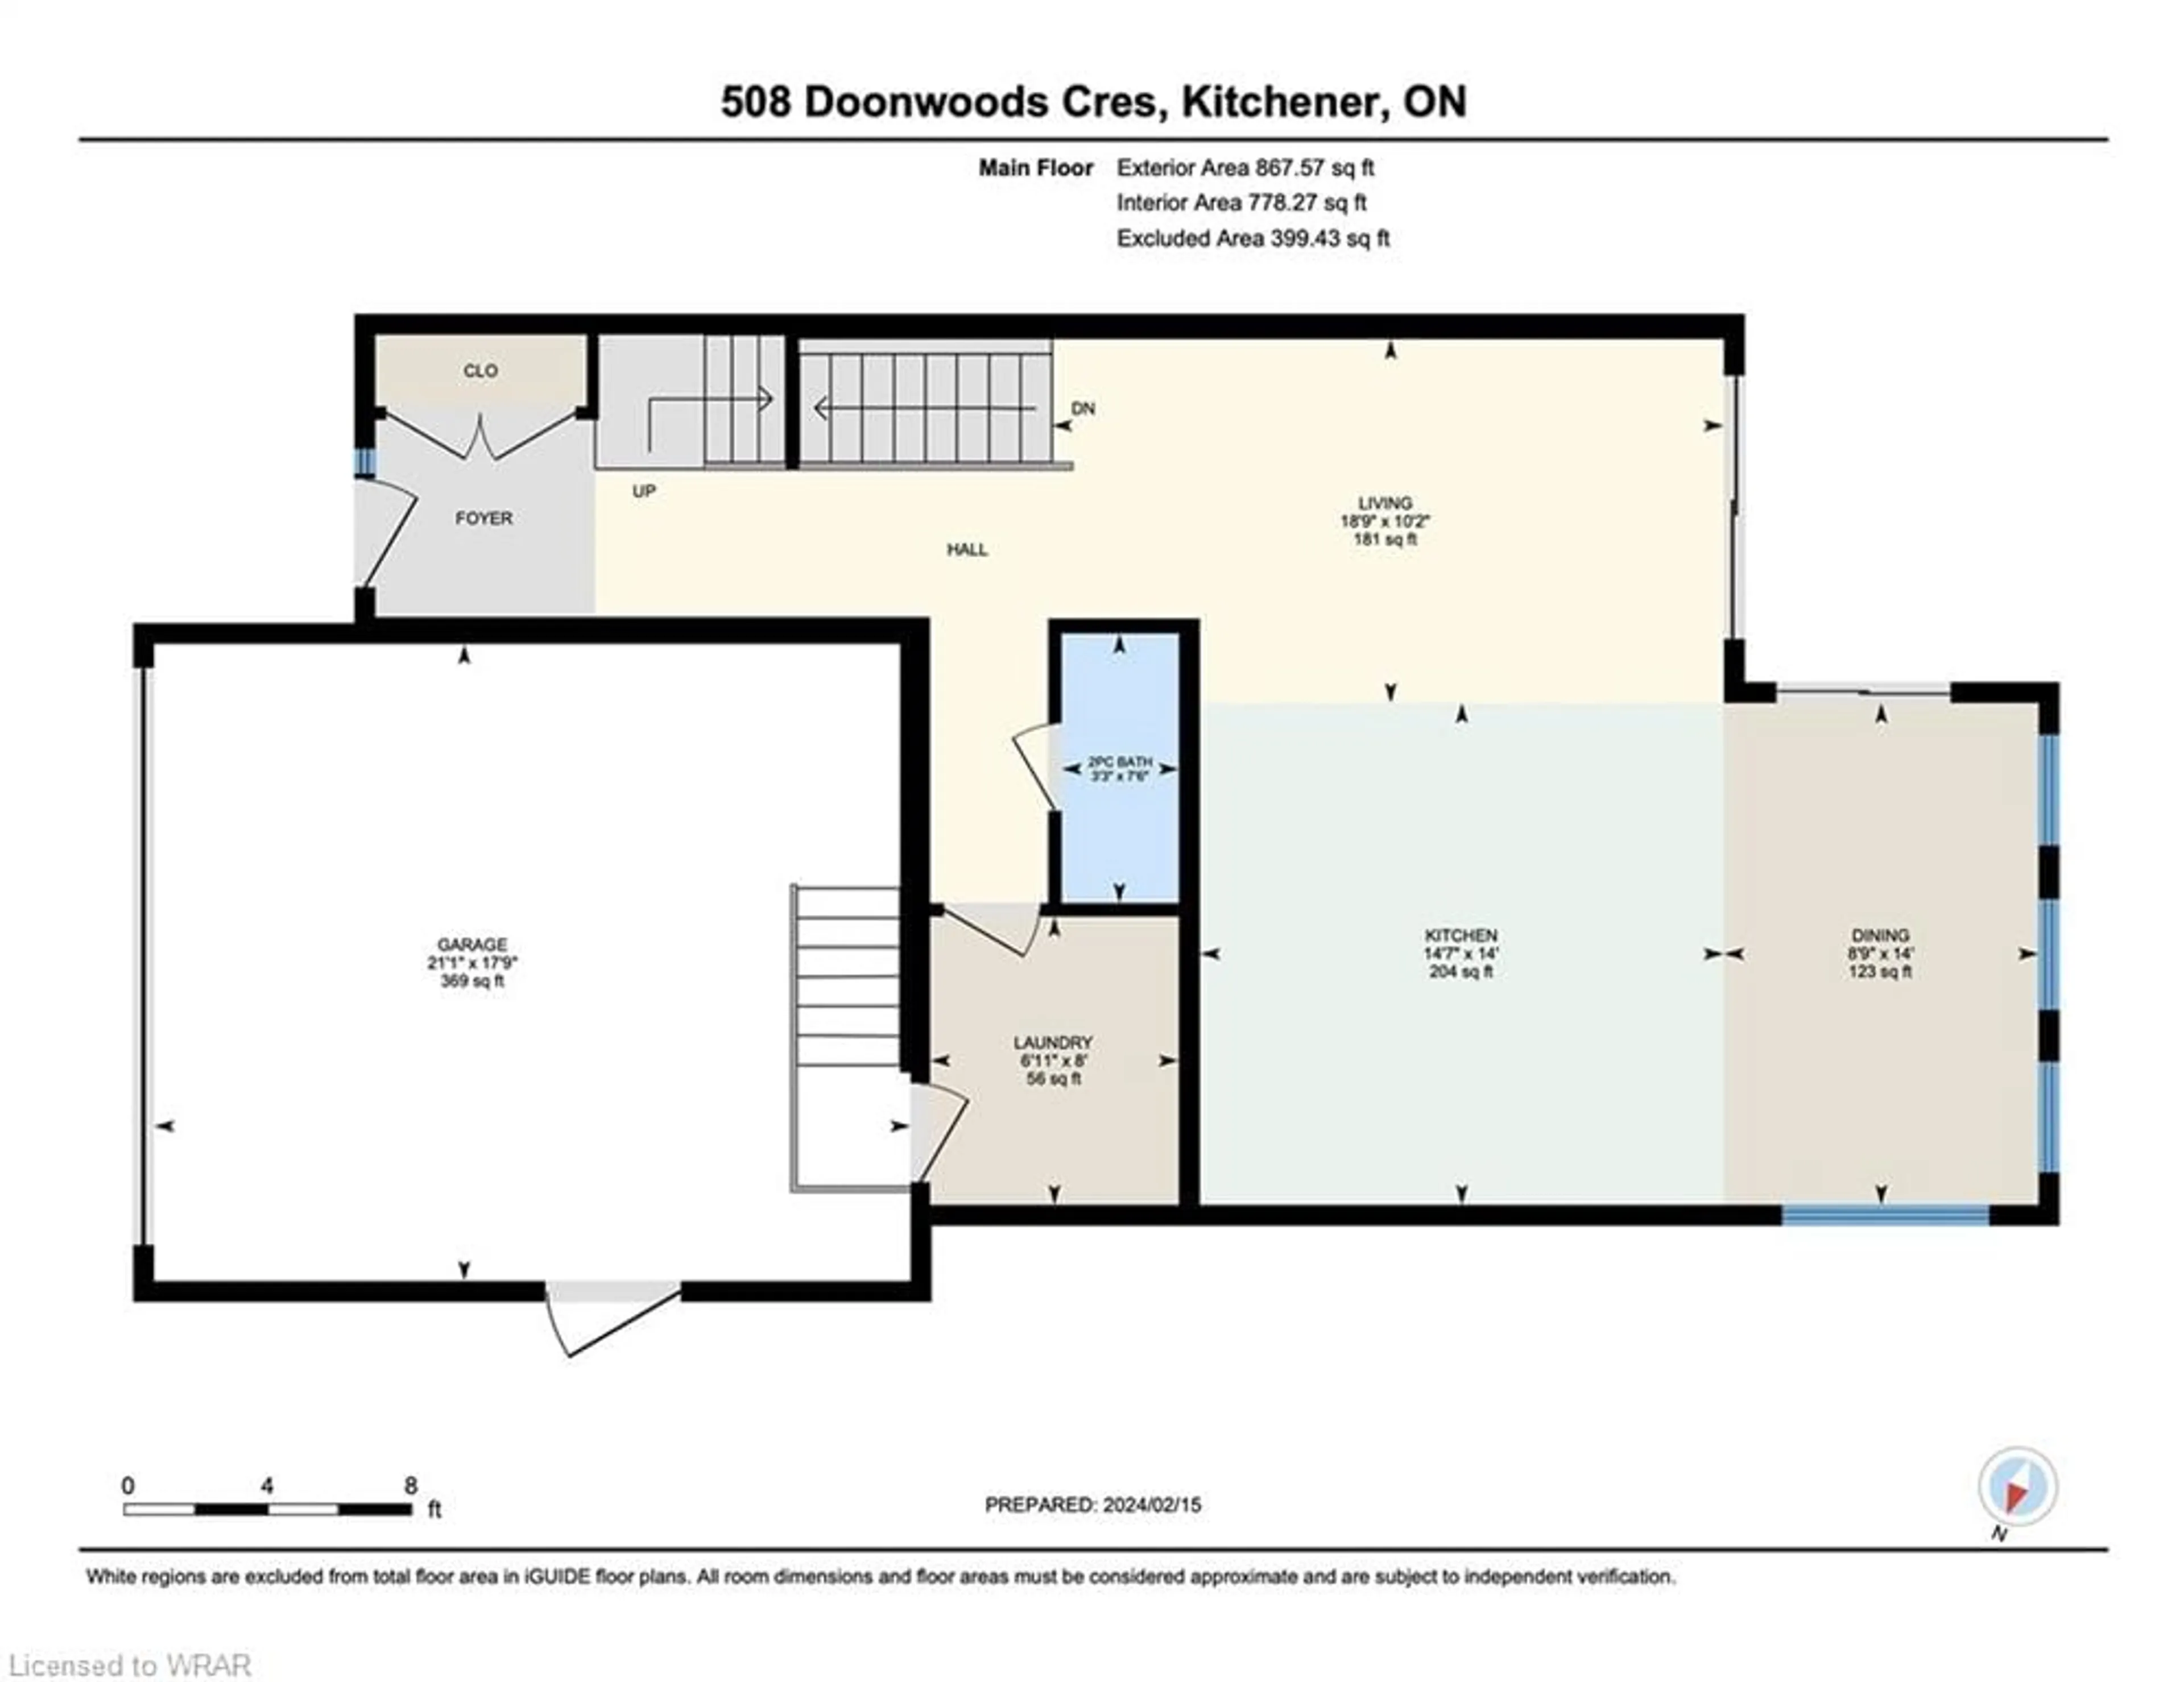 Floor plan for 508 Doonwoods Cres, Kitchener Ontario N2P 0E5